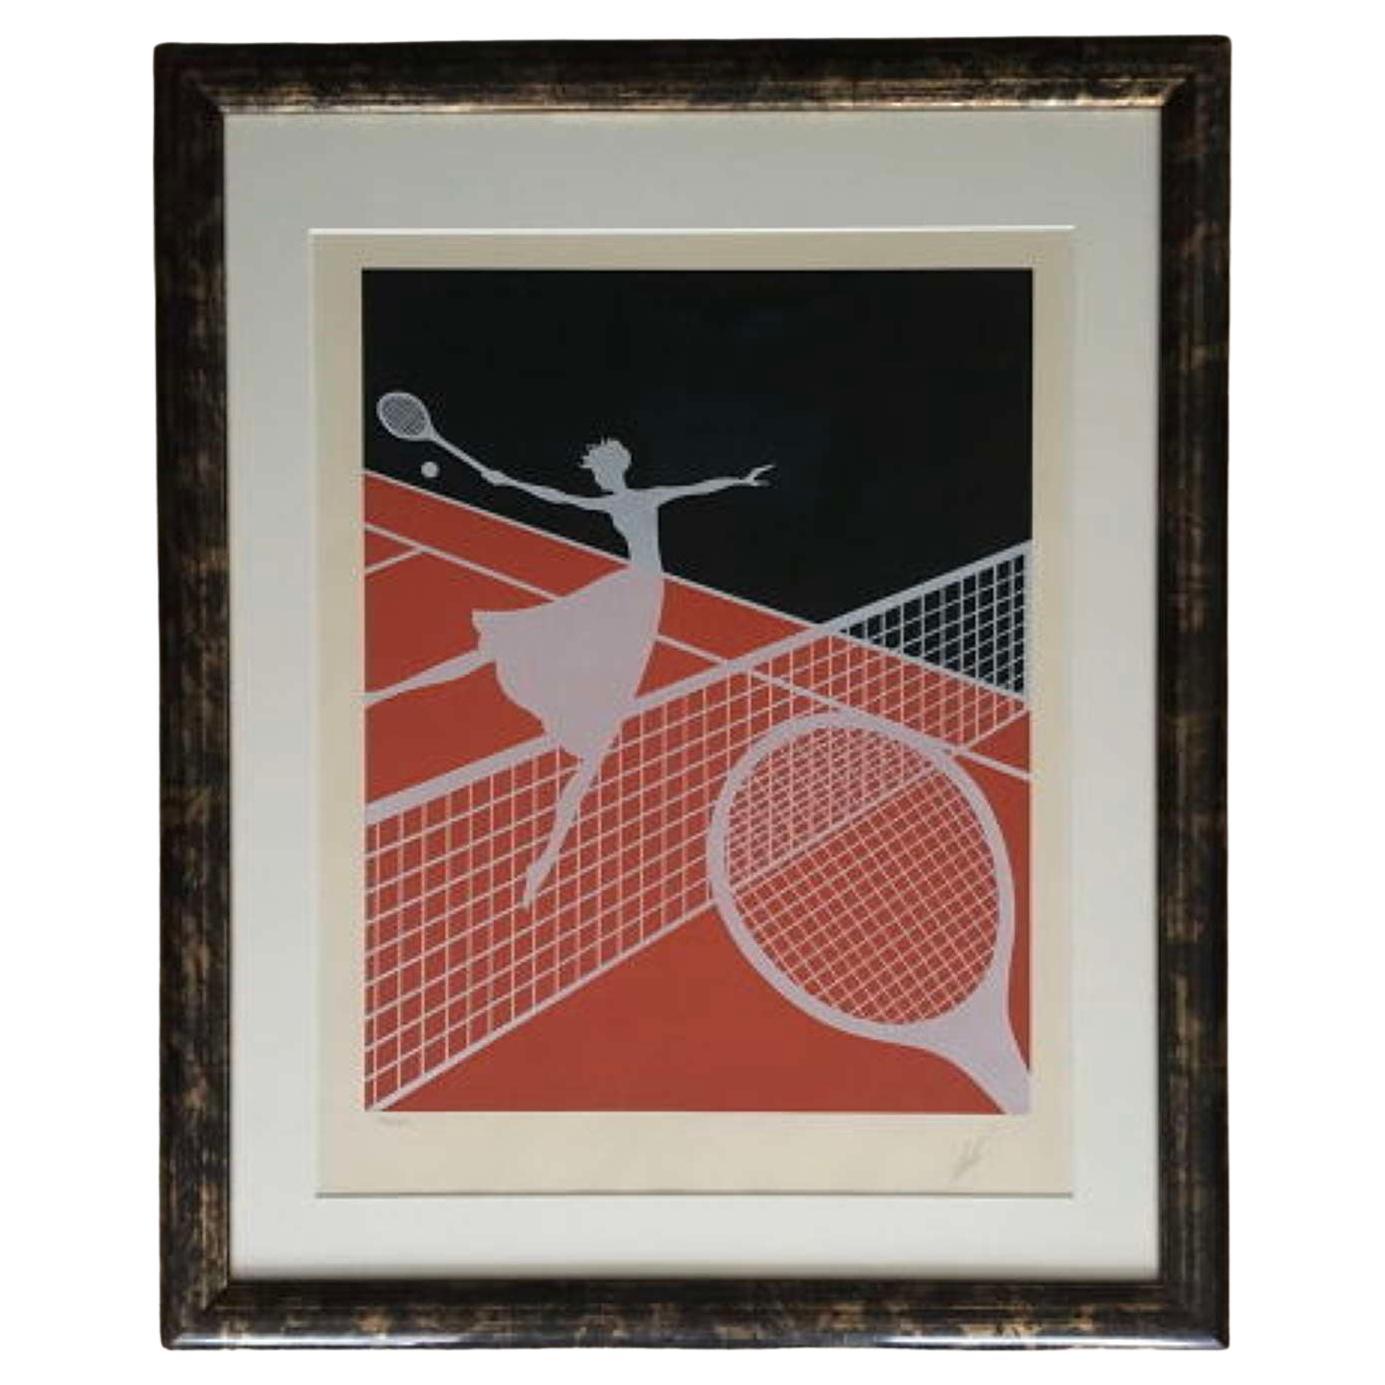 Signierter Siebdruck „Nach der Liebe und dem Tennis“ in limitierter Auflage 